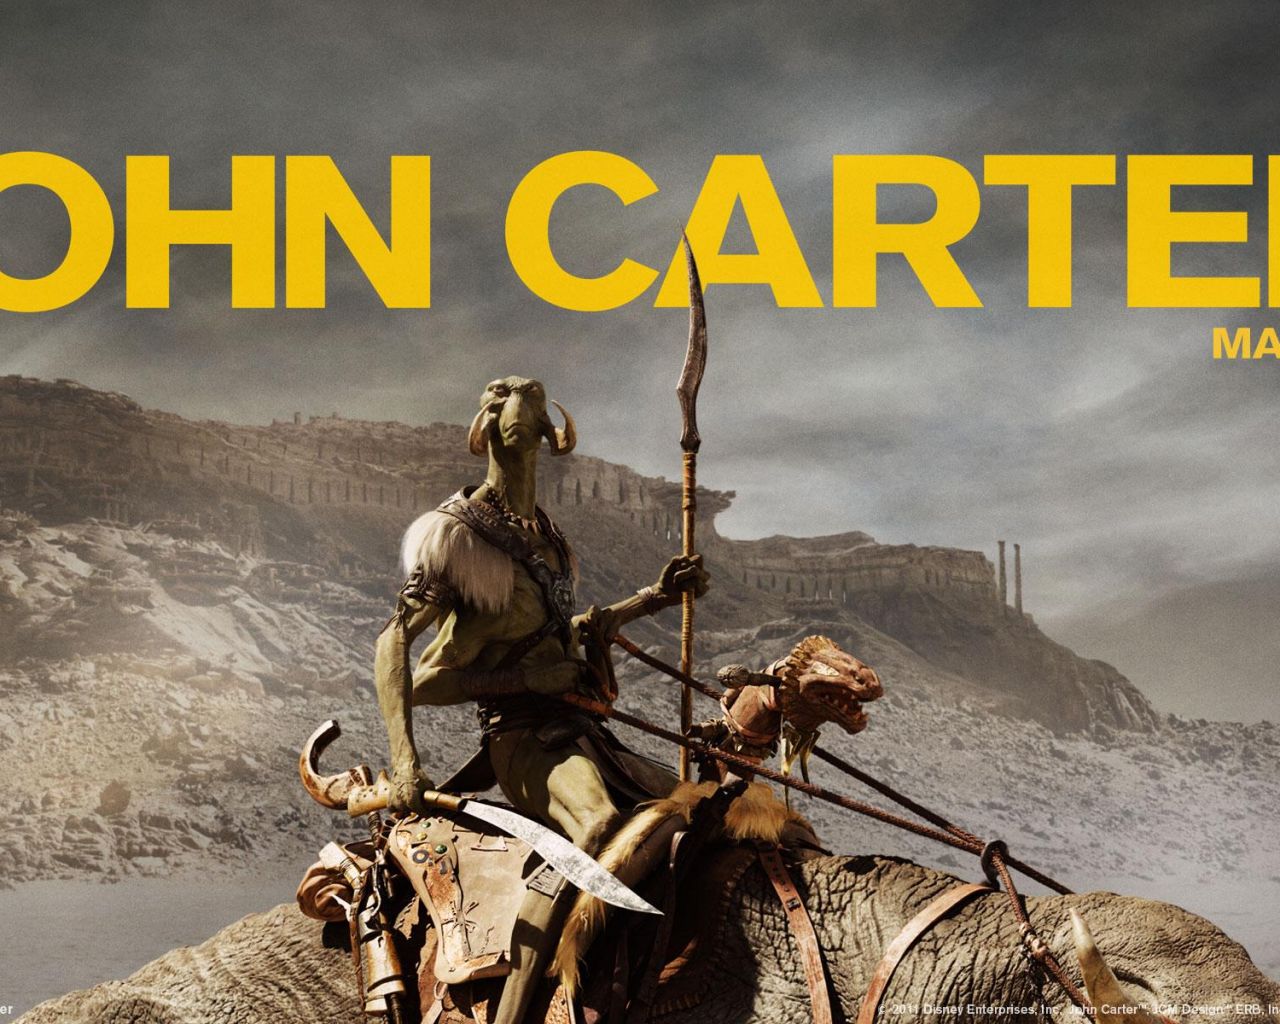 Фильм Джон Картер | John Carter - лучшие обои для рабочего стола